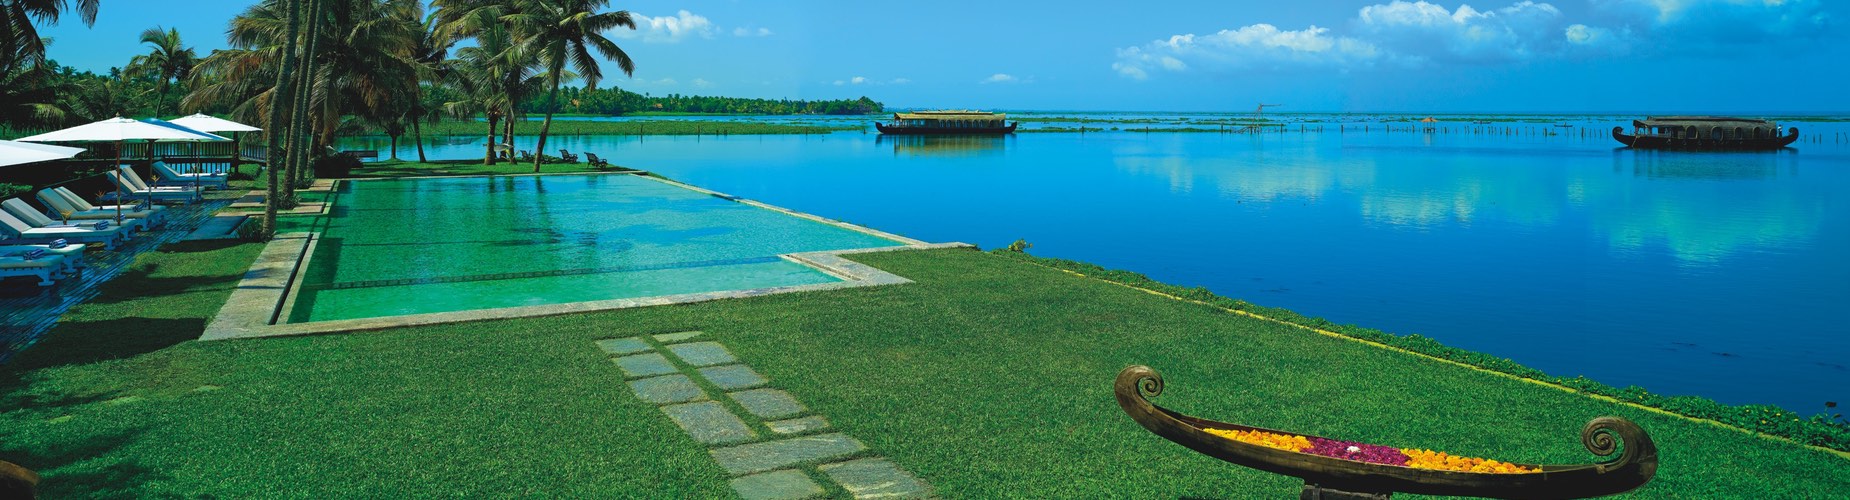 Contact Us : Kumarakom Lake Resort